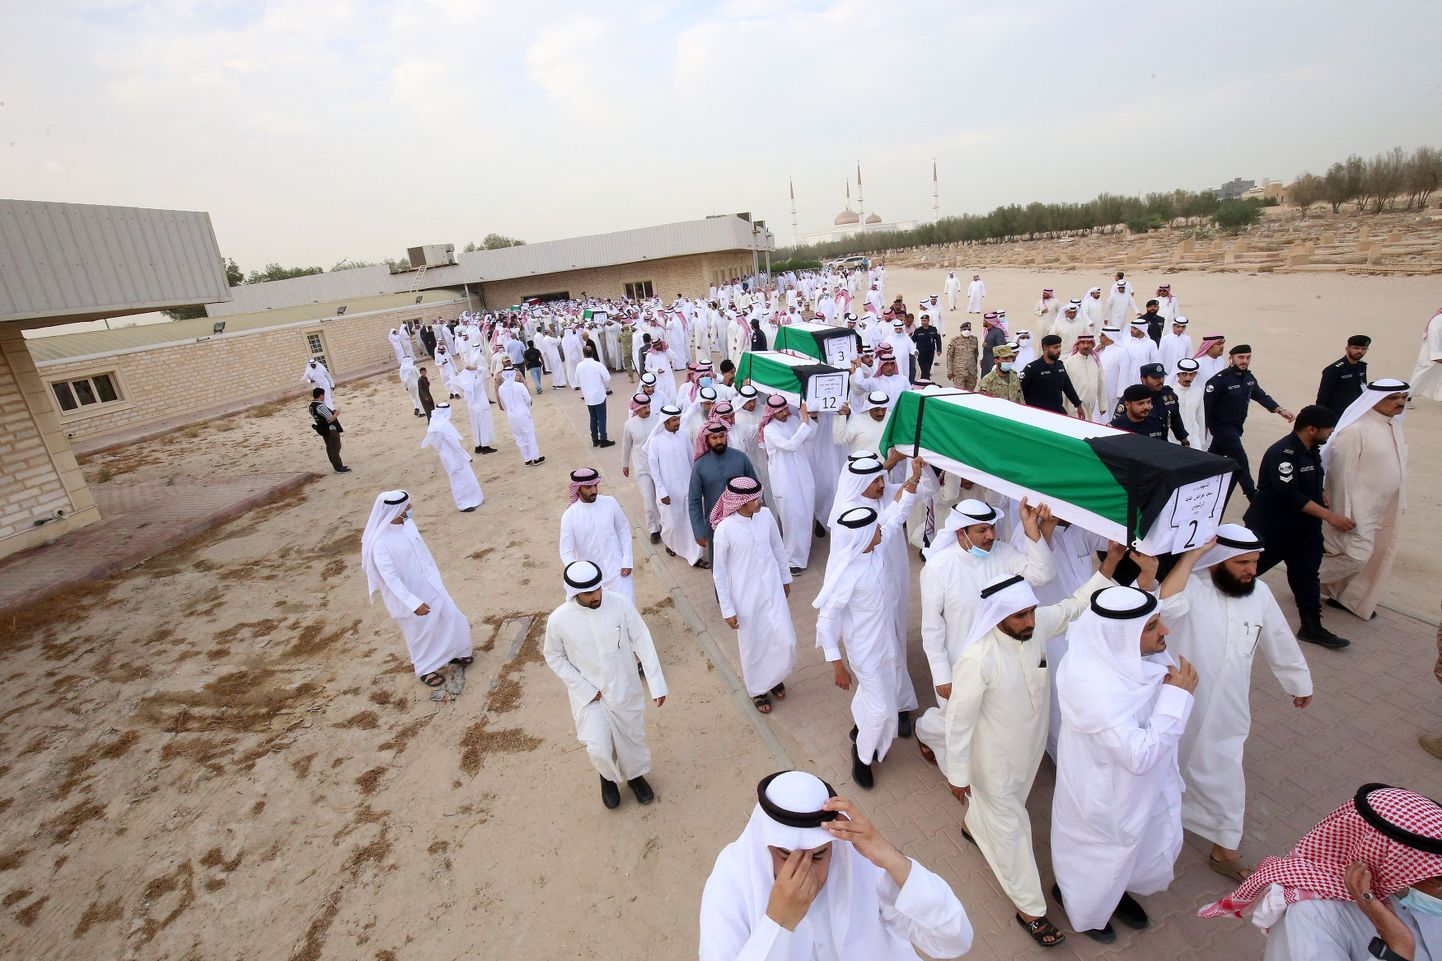 Leinajad kannavad kirste 19 Kuveidi sõjavangi surnukehadega, kelle säilmed leiti Iraagis ühishauas. Kuveitlased olid vangistatud Iraagi sissetungi ajal 1990. aastal.